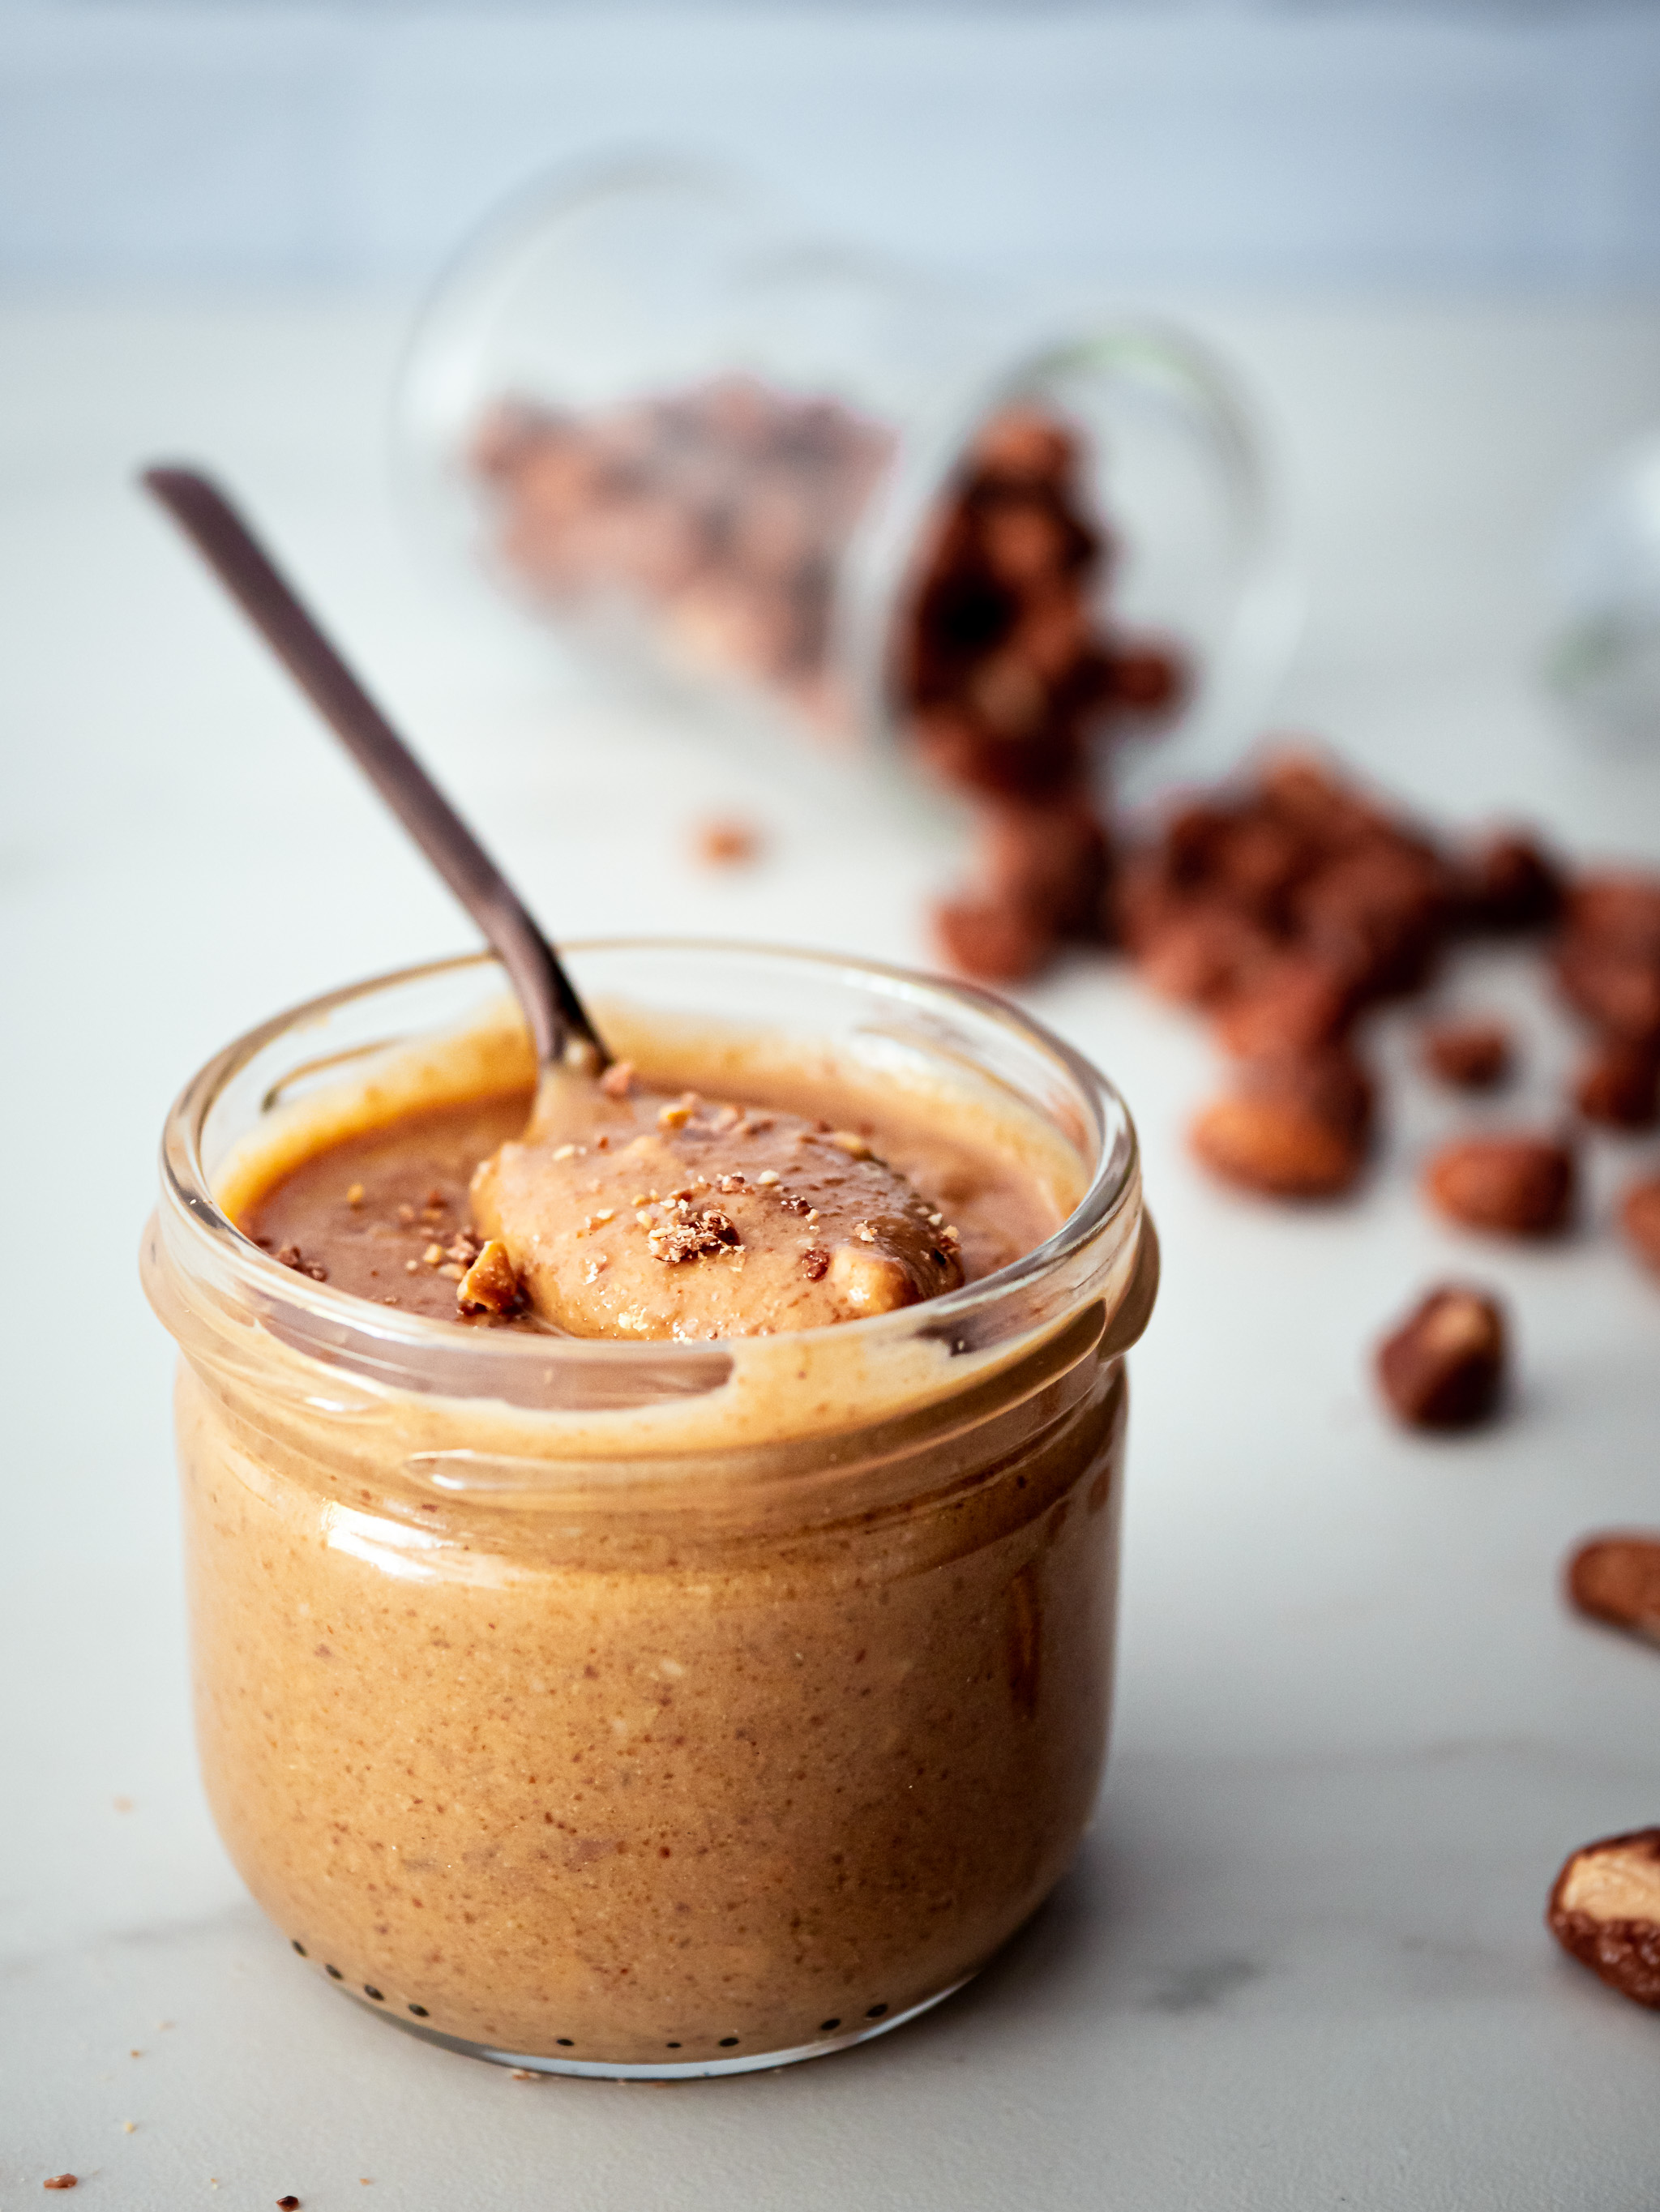 Chouchous (cacahuètes caramélisées) - Achat et recette - L'ile aux